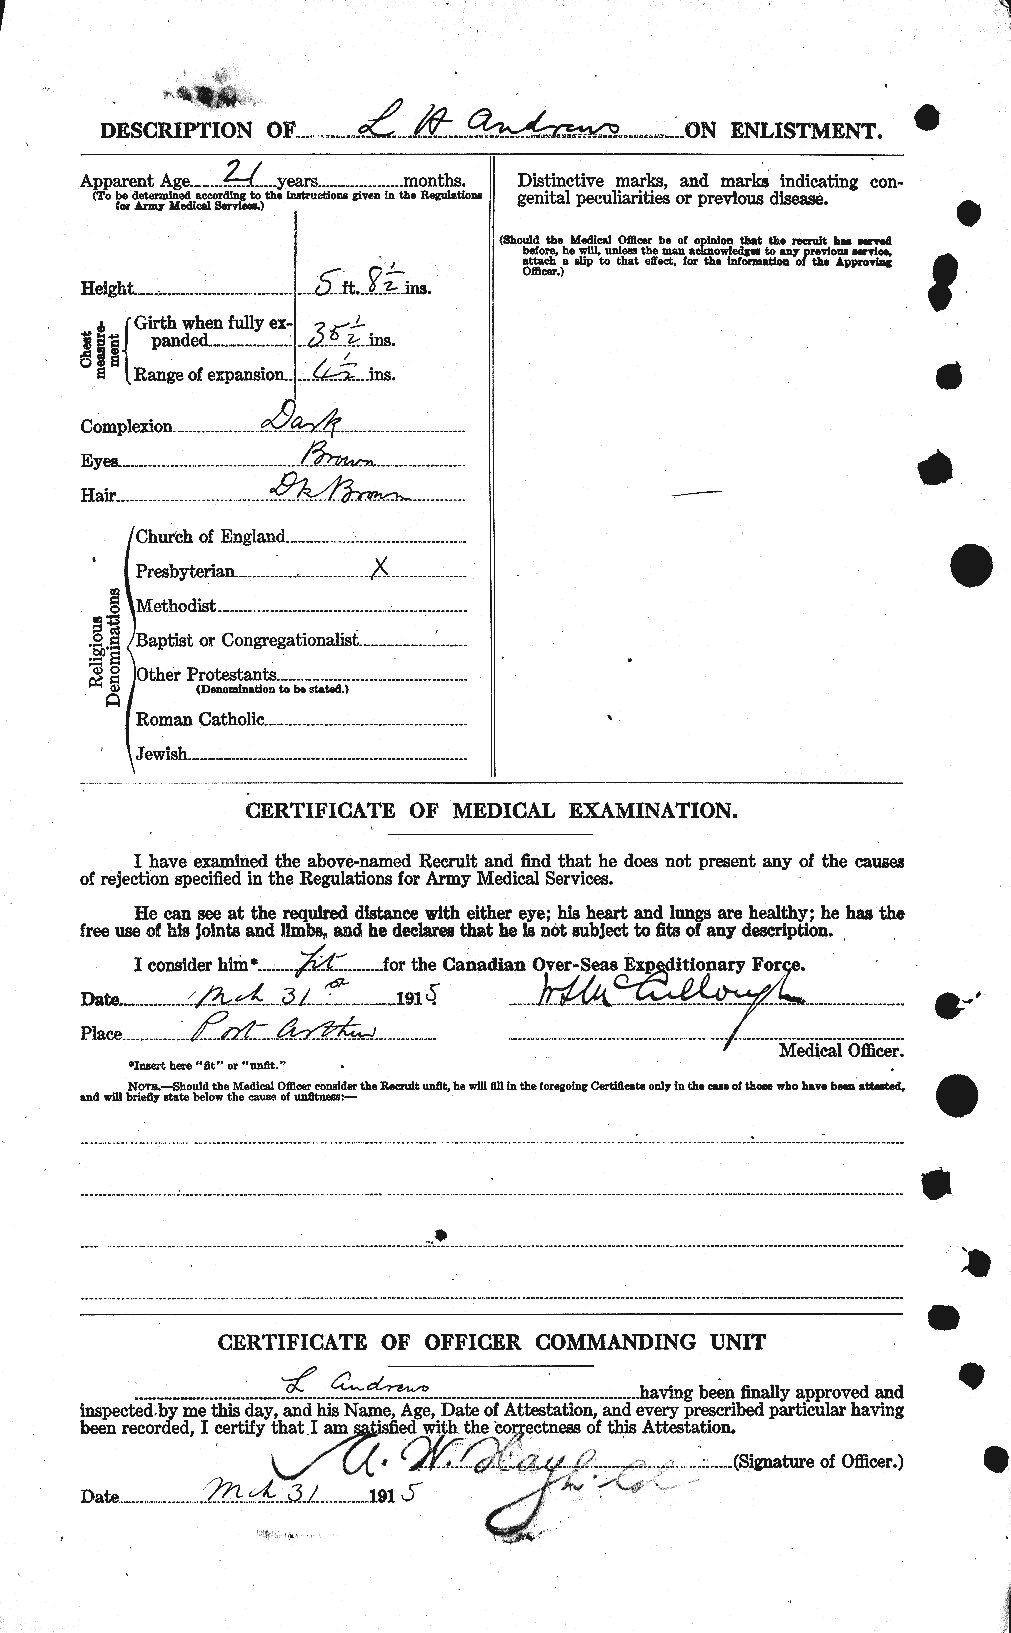 Dossiers du Personnel de la Première Guerre mondiale - CEC 210172b